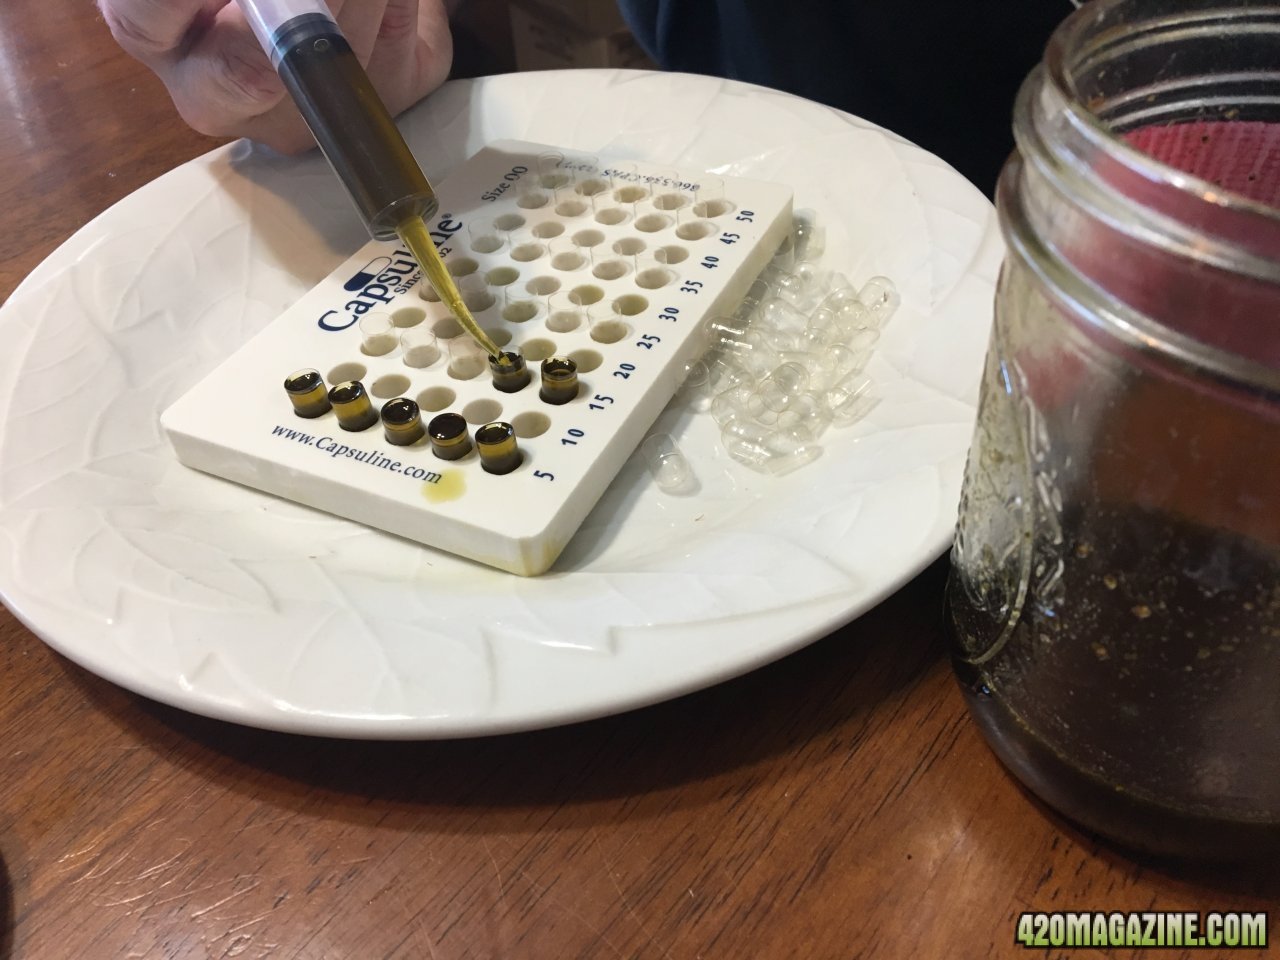 Making ATF capsules